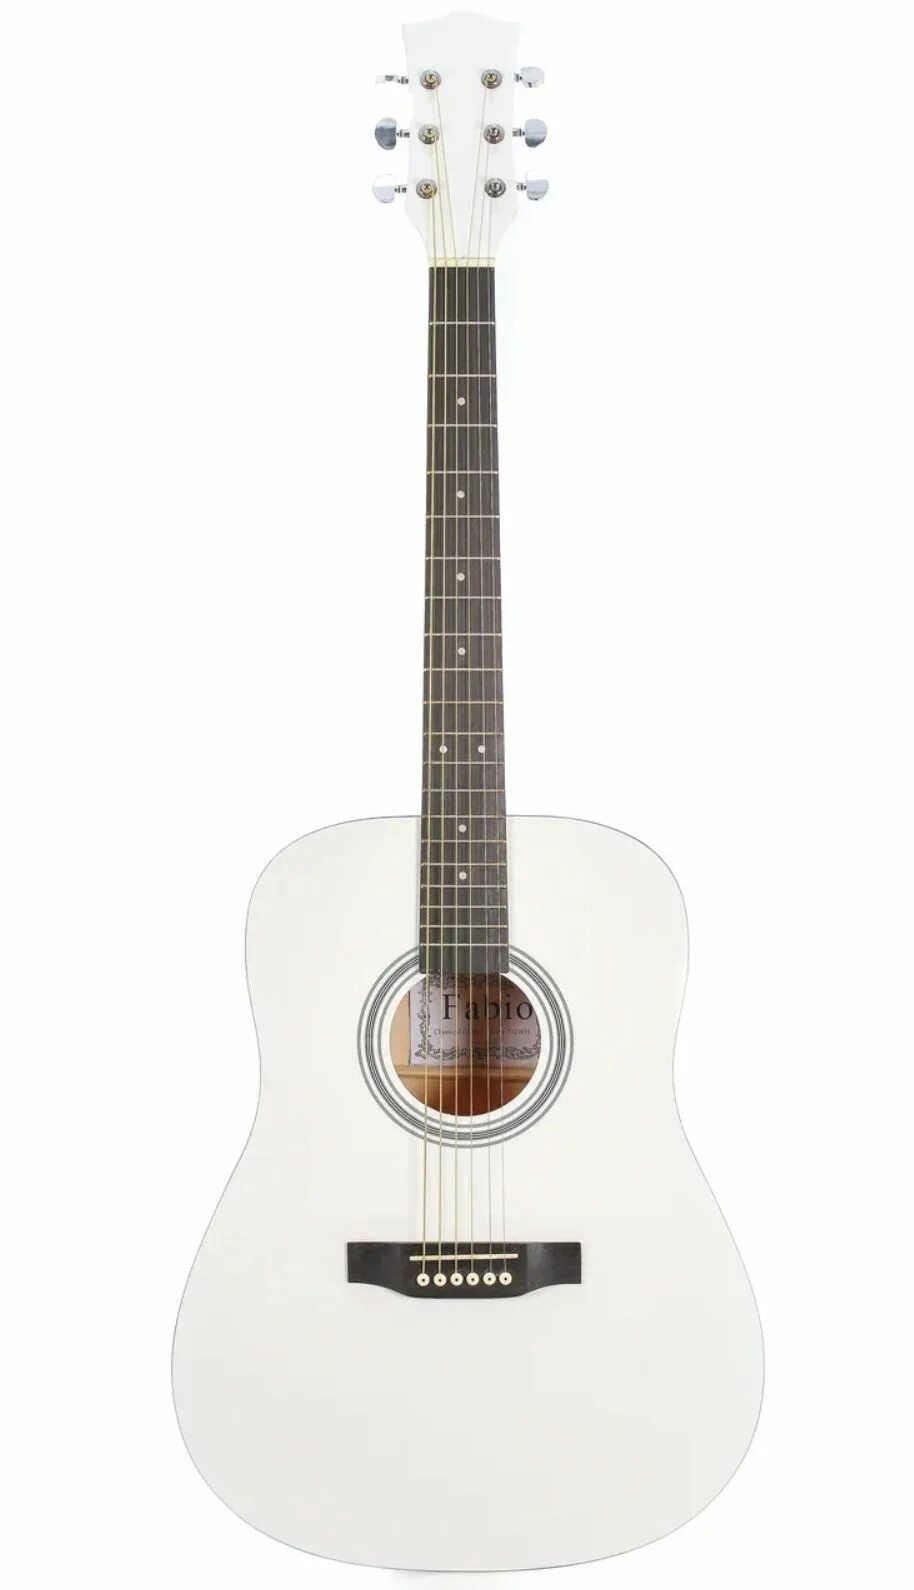 Гитара mr. Акустическая гитара Belucci bc3810 WH. Акустическая гитара Bellucci 3810 белая. Акустическая гитара Belucci BC-4010 BK. Акустическая гитара Ashton d20.